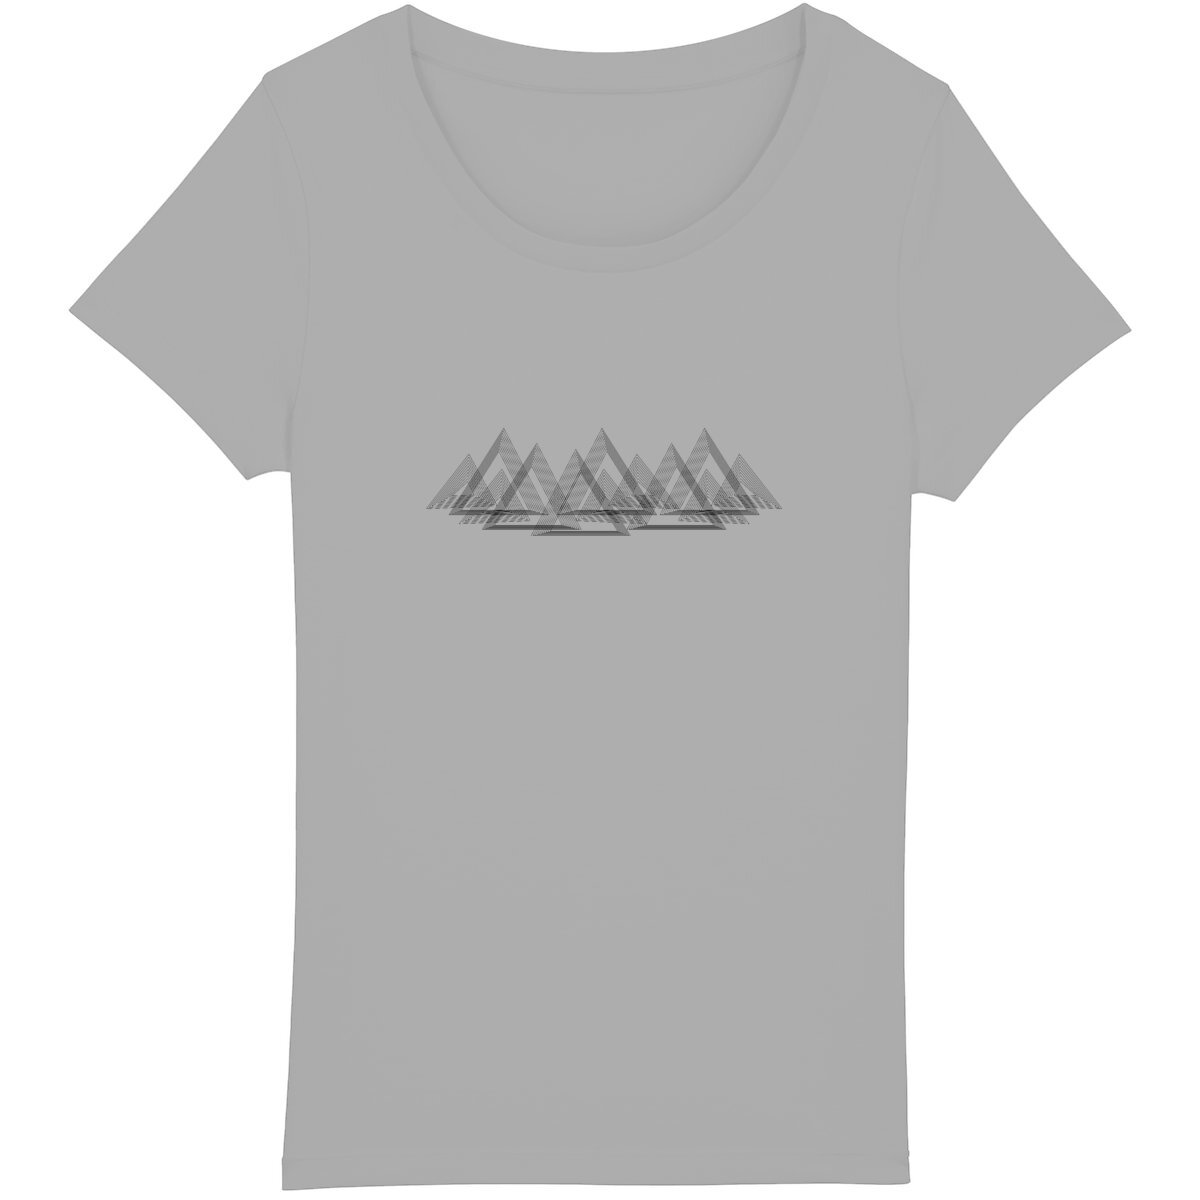 T-shirt femme Sortie Longue avec paysage montagneux discret